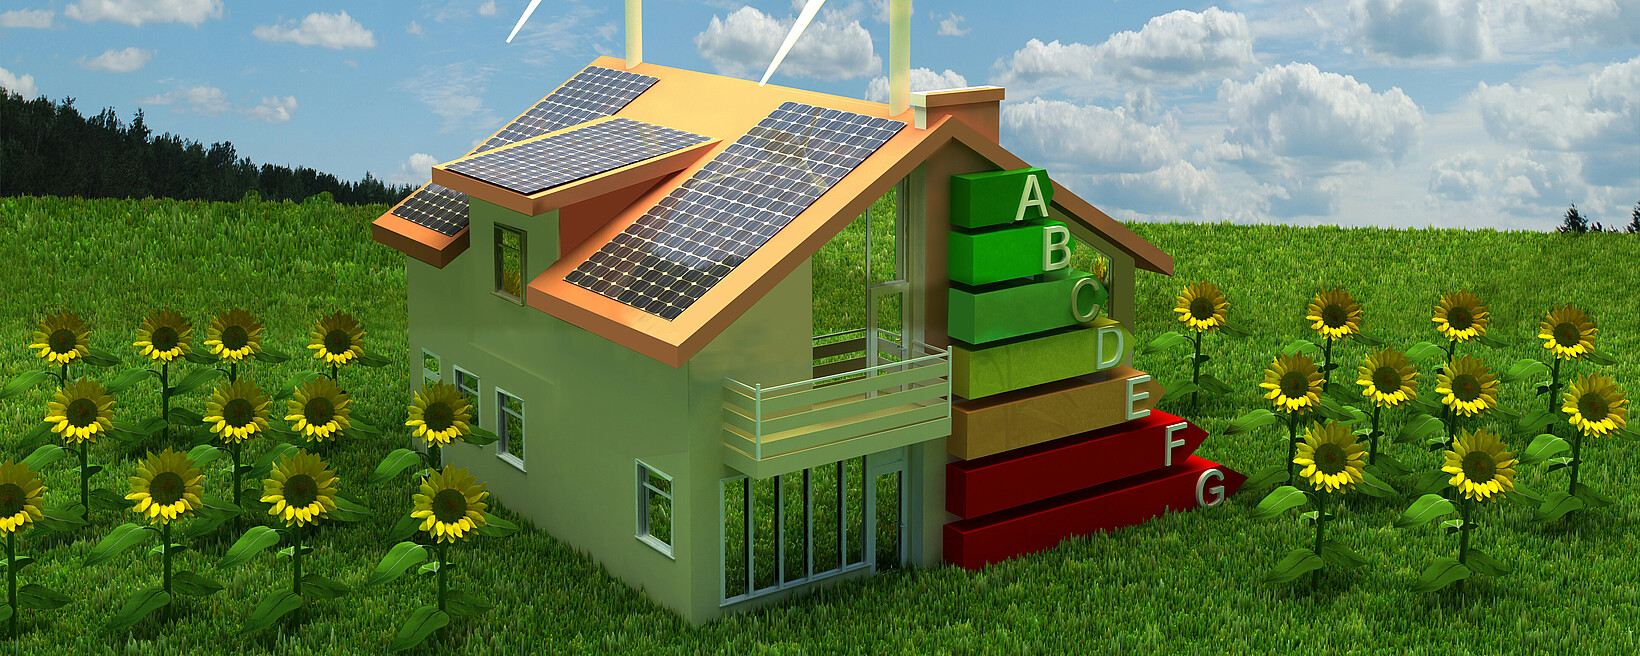 Grafik eines Hauses mit erneuerbaren Energien und Energie-Label A-F